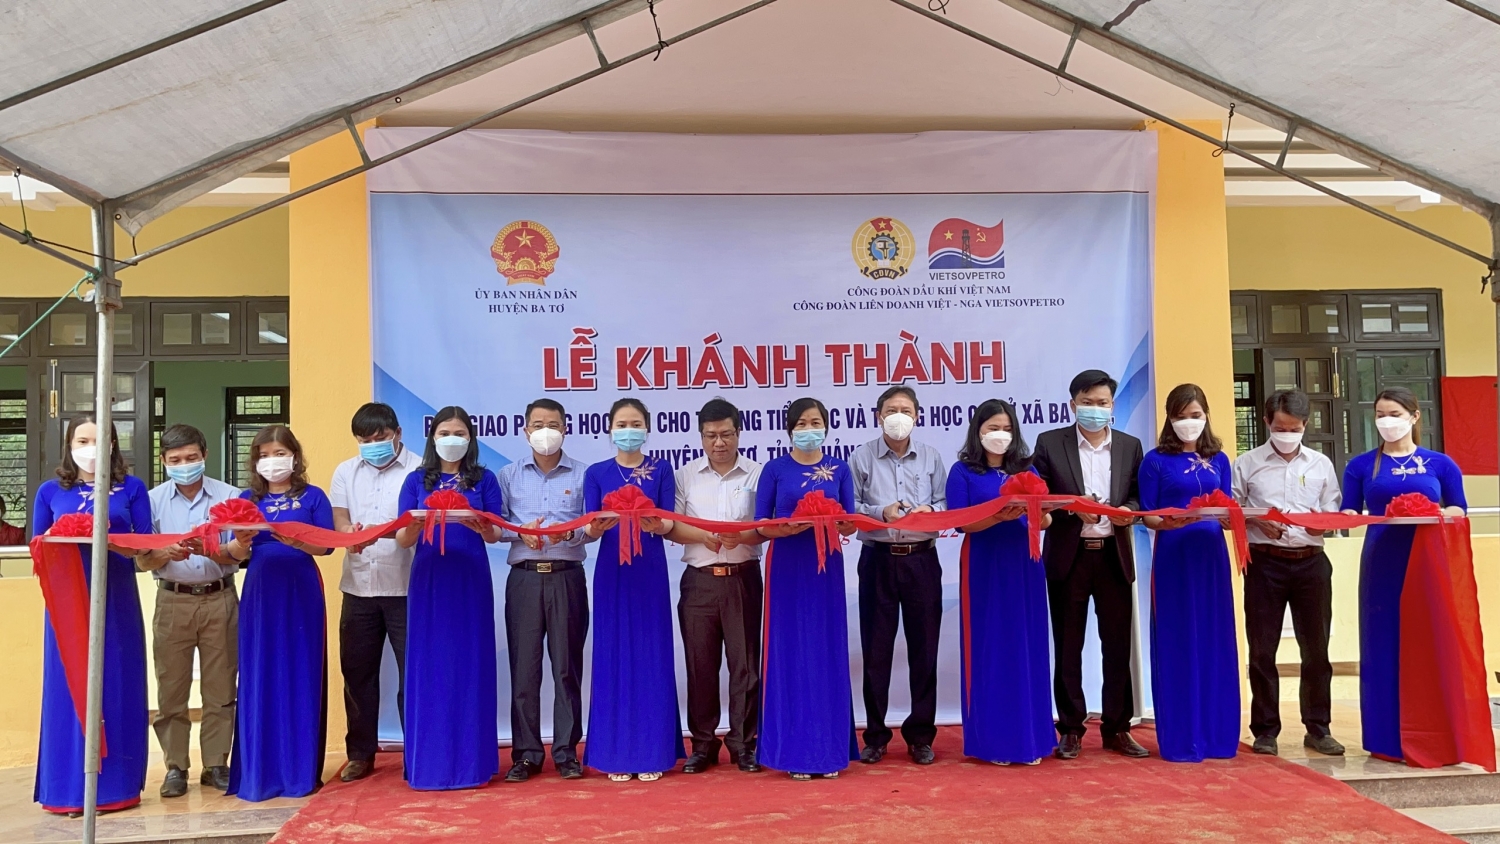 Các đồng chí lãnh đạo Công đoàn Vietsovpetro và chính quyền địa phương tổ chức lễ cắt băng khánh thành phòng học mới tại huyện Ba Tơ, tỉnh Quảng Ngãi